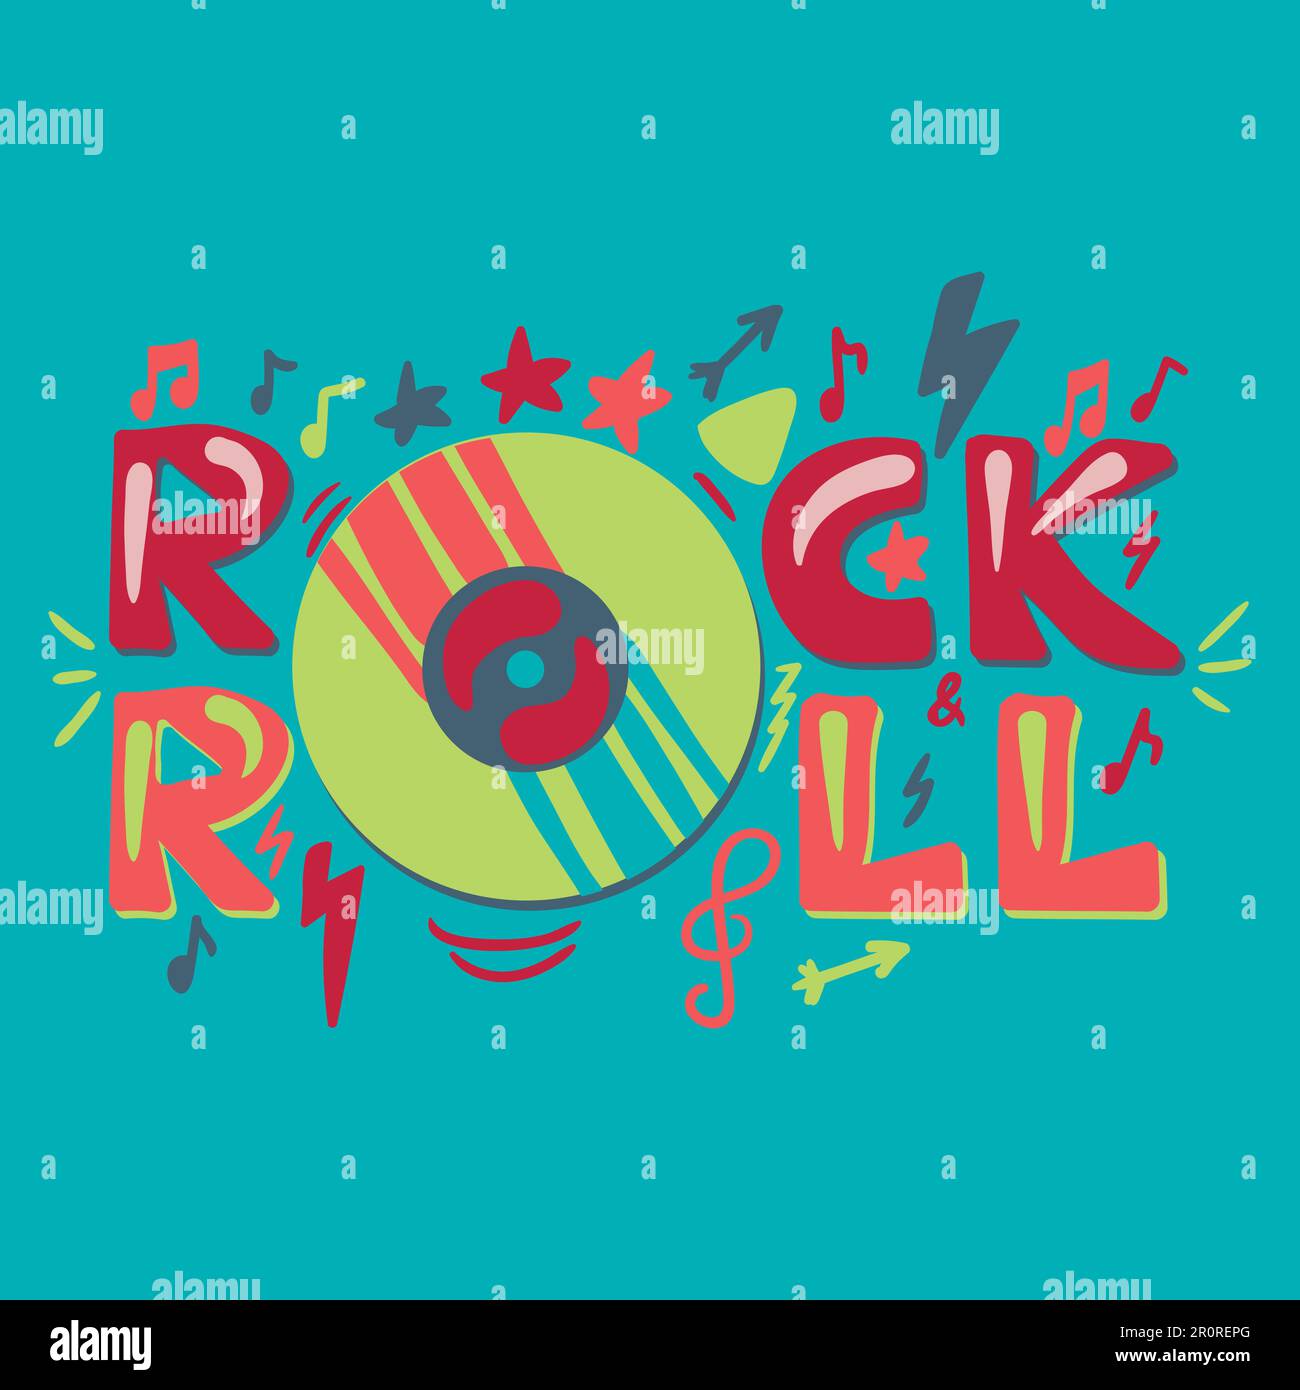 Vorlage für Disco- und Retro-Konzert-Poster. Rock 'n' Roll, handgezeichnete Schriftzeichen. Banner, Einladung Stock Vektor